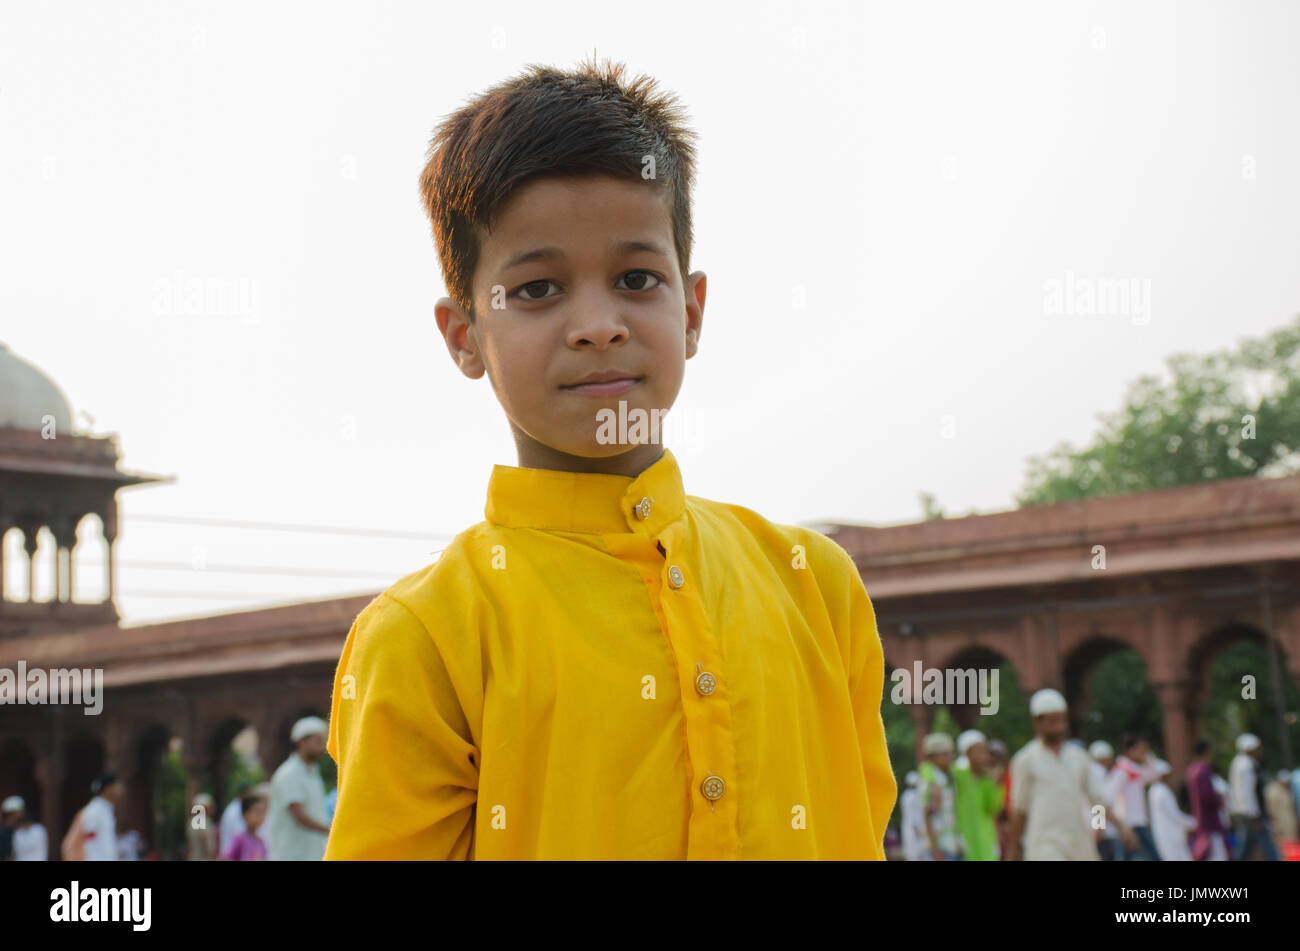 Jama Masjid, Old Delhi, Inde - 24 juin 2017 : portrait of a cute jeune Indien qui est venu d'offrir la prière, alors qu'ils célèbrent le dernier vendredi avant l'aïd. t Banque D'Images